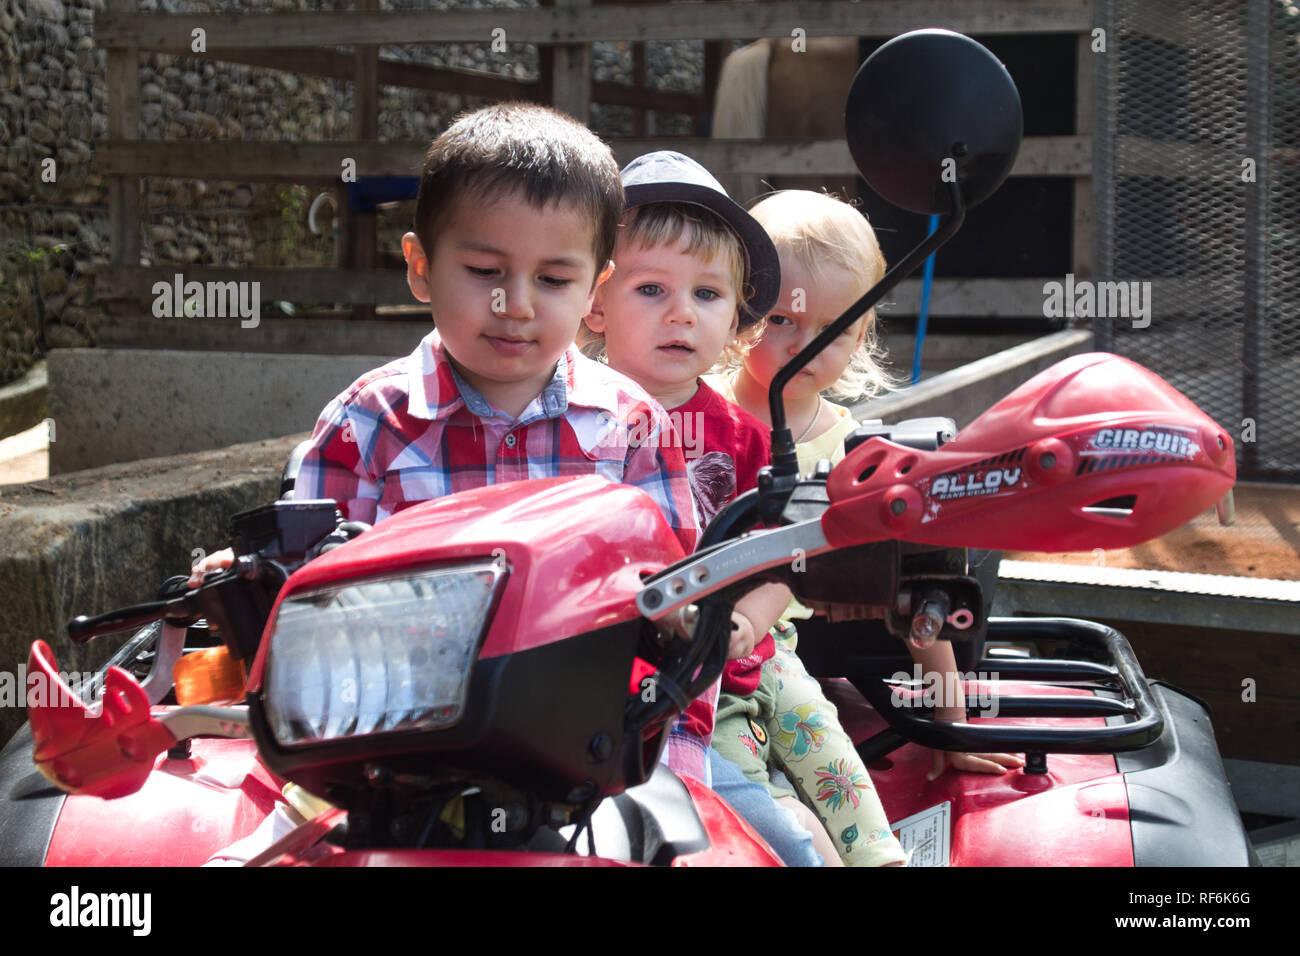 Une photo de trois enfants (deux garçons et une fille) jouant avec un VTT Honda Banque D'Images